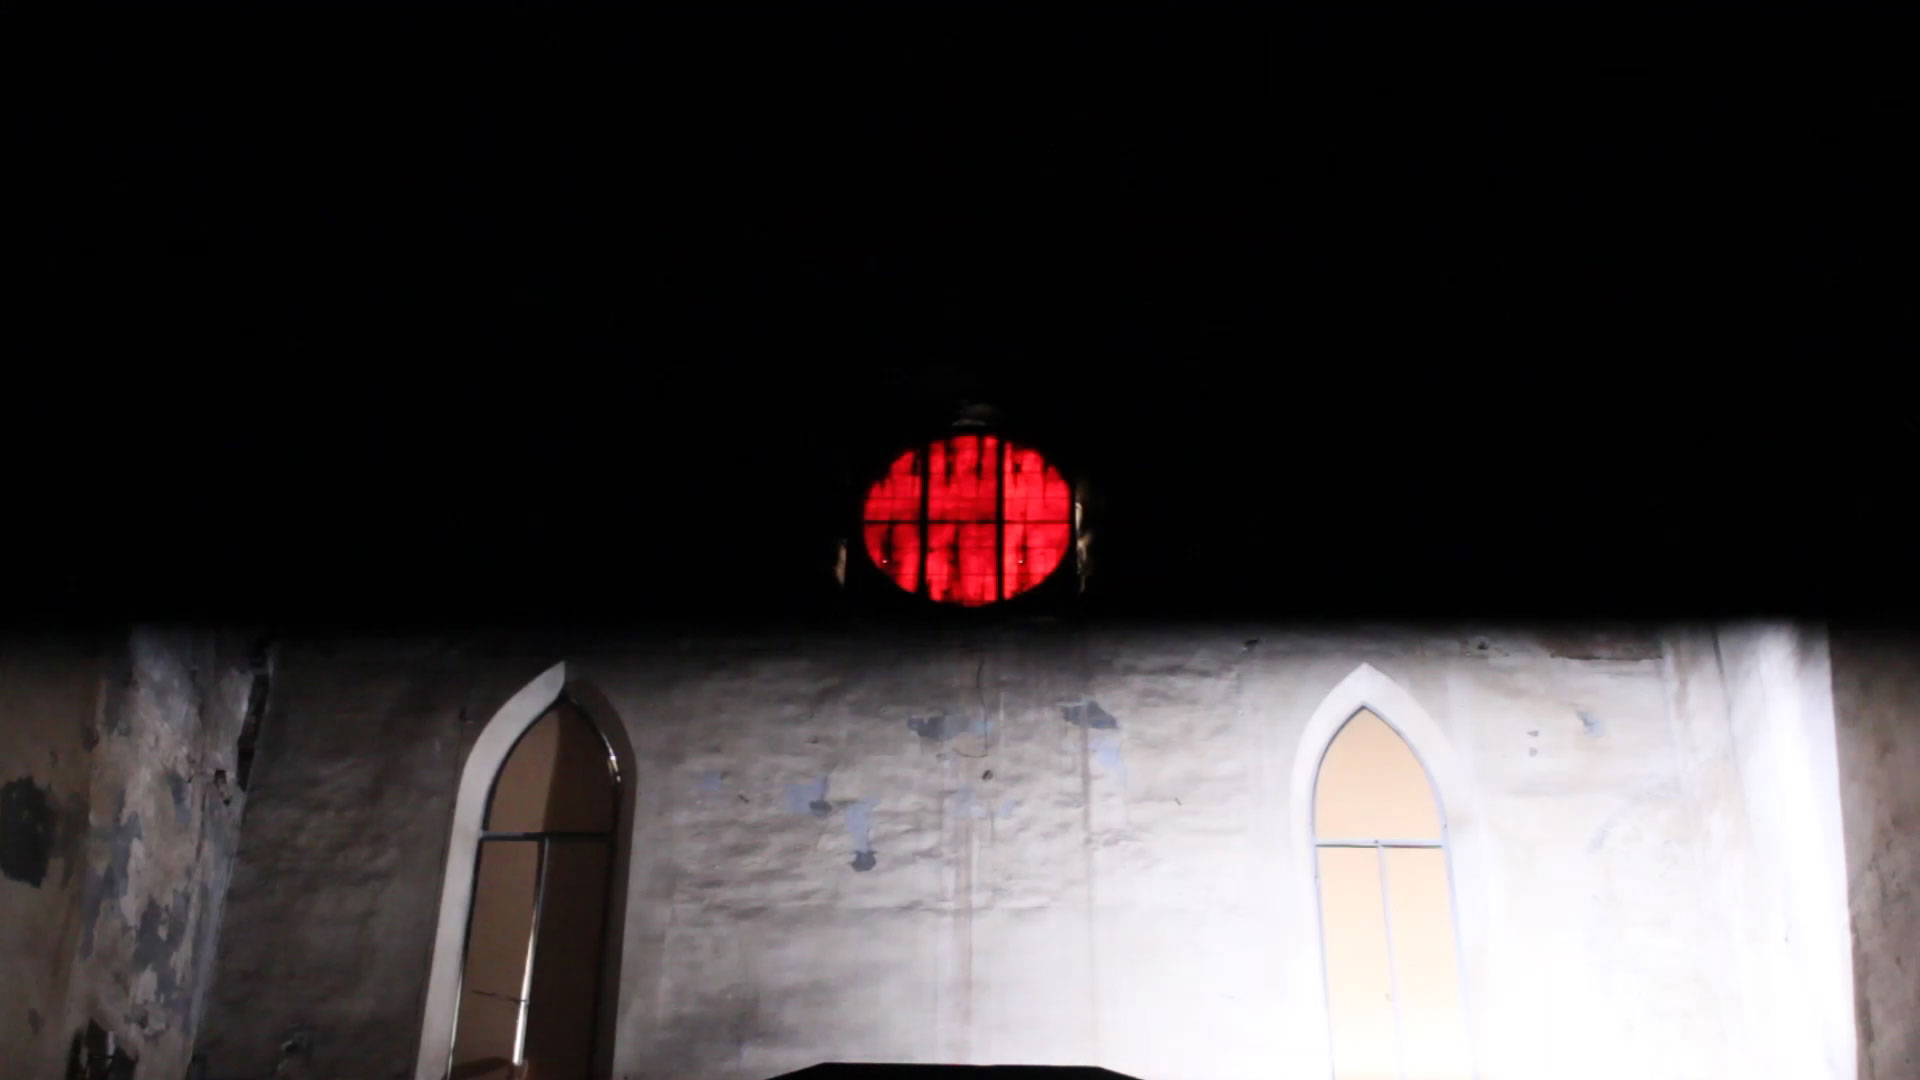 HR-Stamenov, Intervento Spazio Temporale, 2014, light installation with sound, Chiesa di San Matteo, Lucca